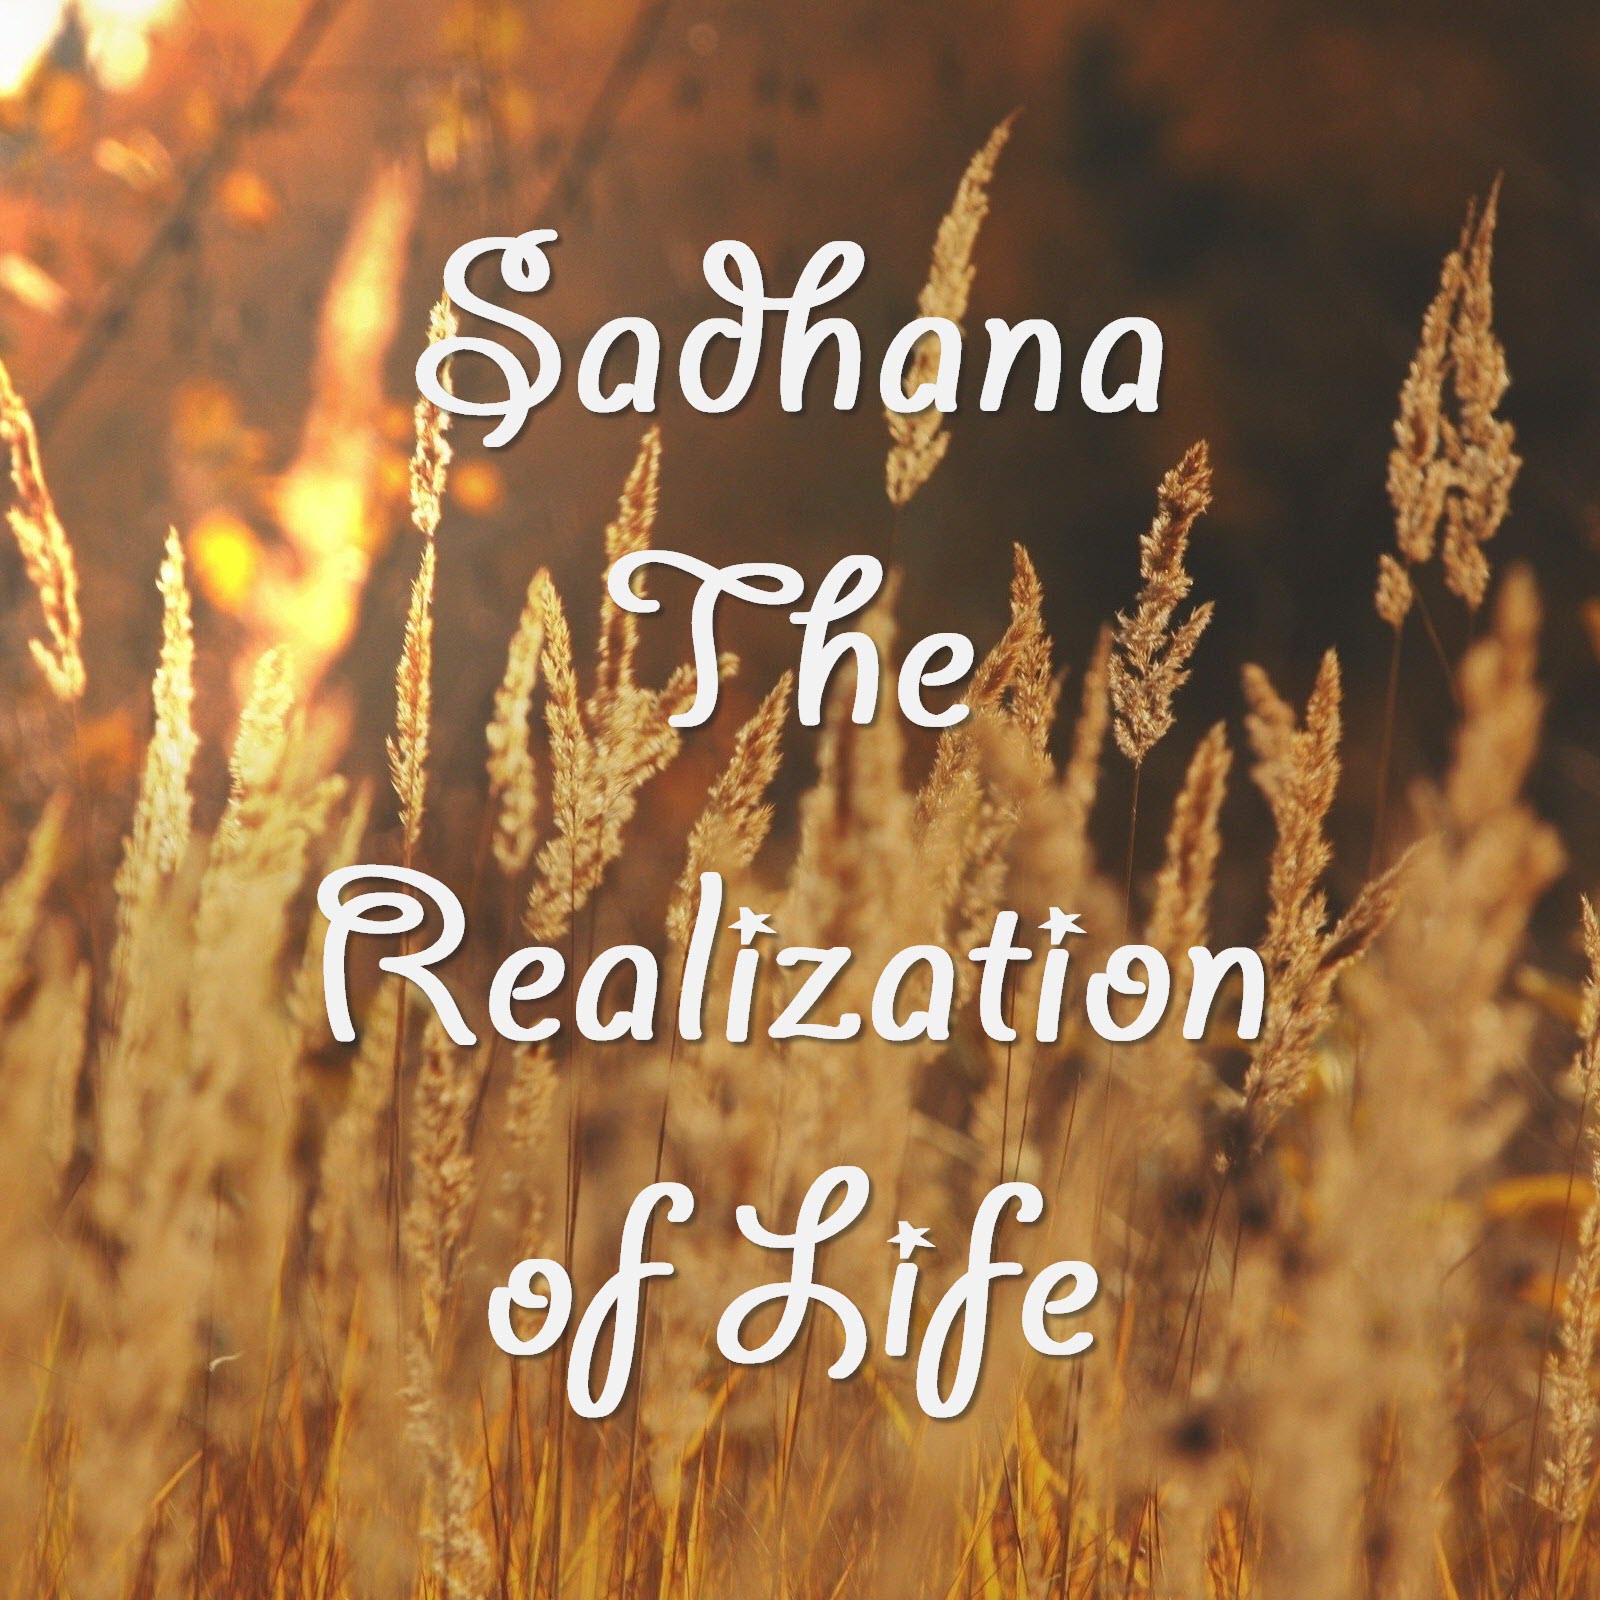 The Sadhana: Realisation of Life